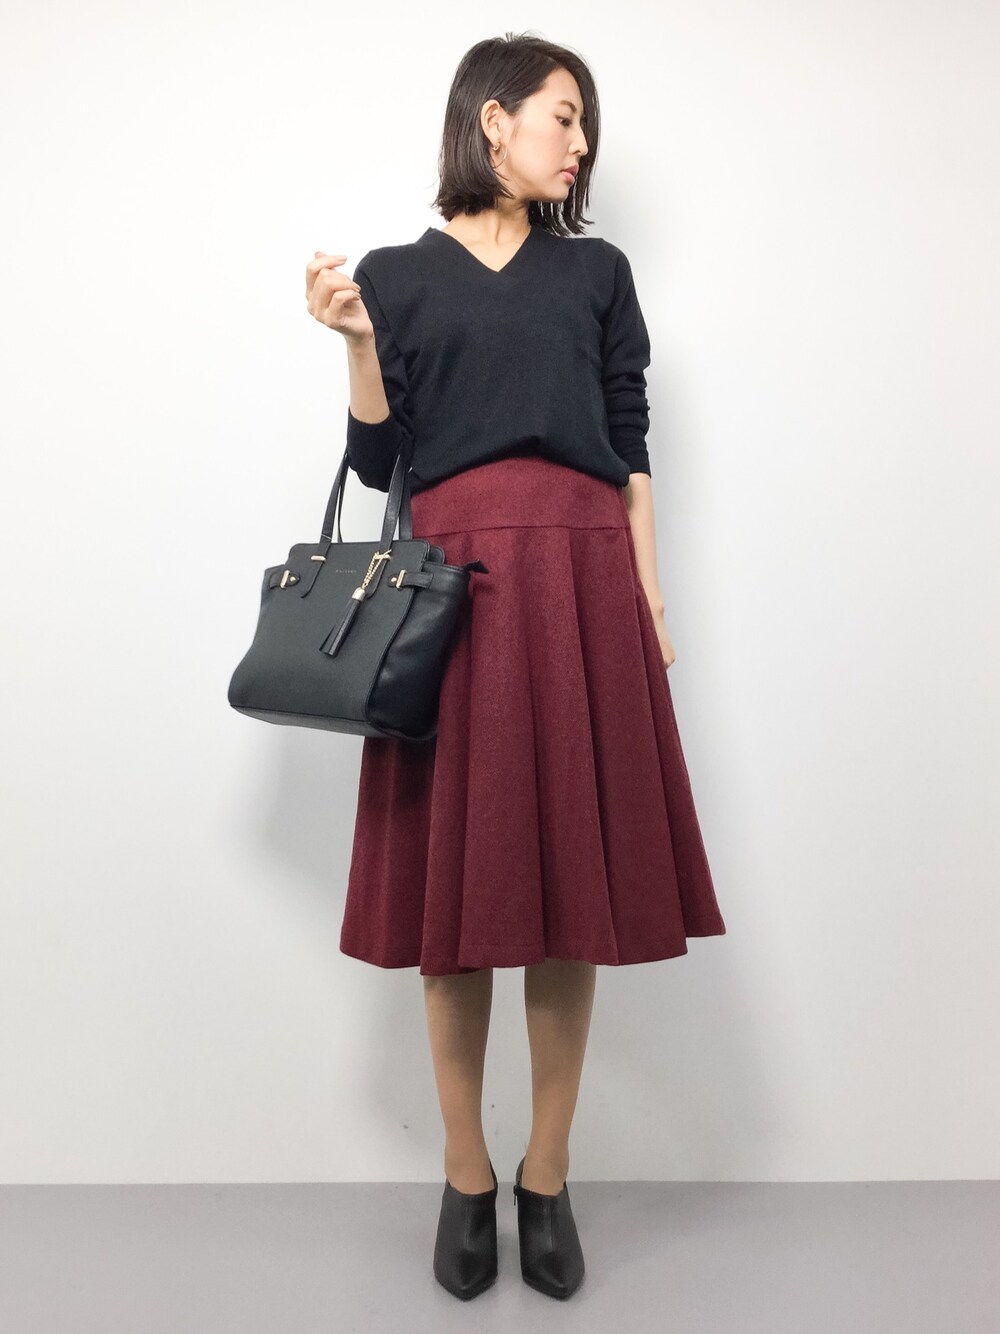 The Virgnia カラーチェックタイトスカート 売れ筋サイト - スカート